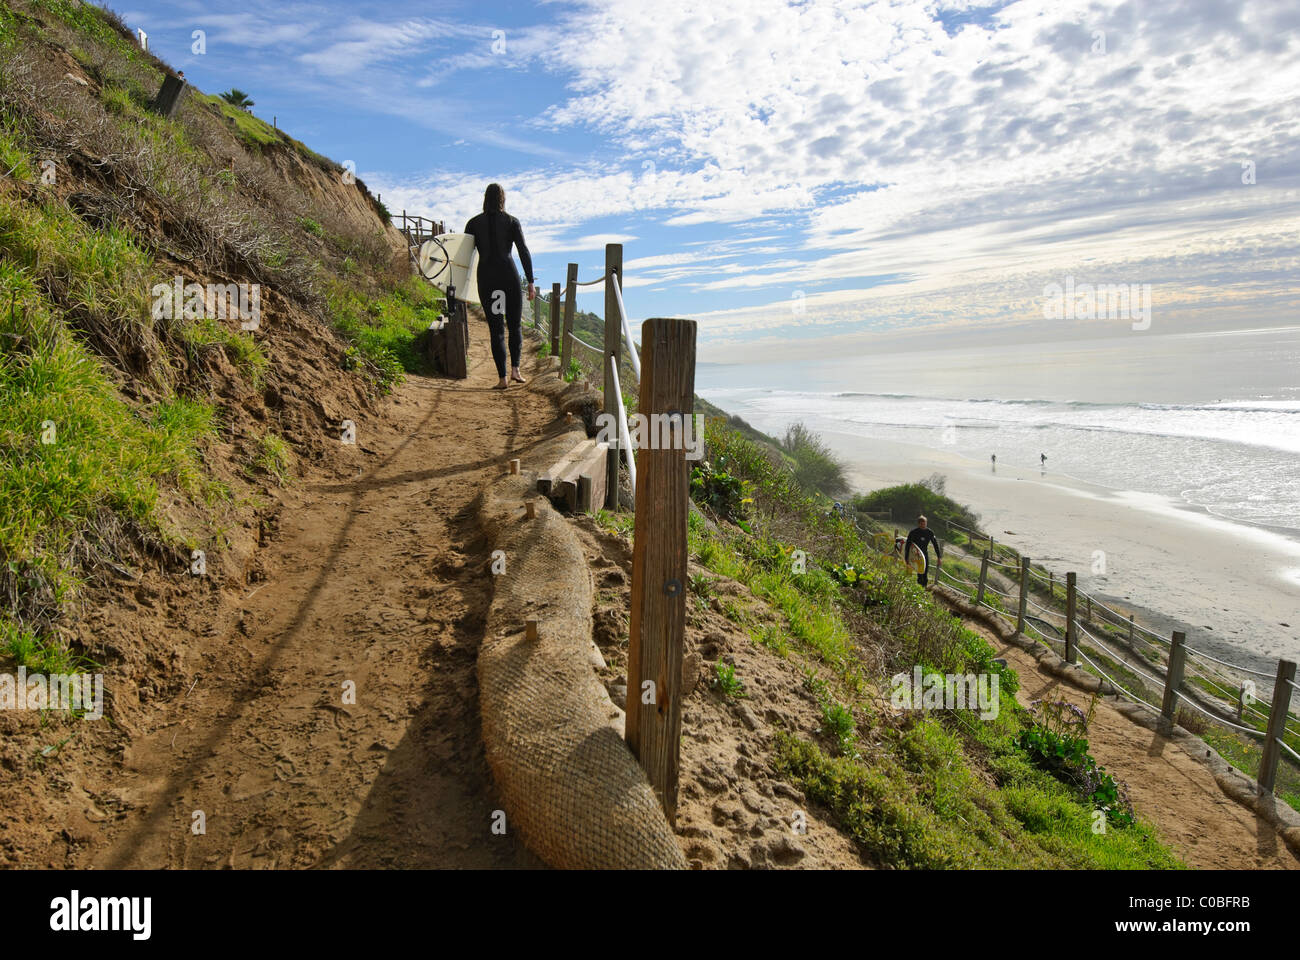 Surfers climbing a coastal bluff trail at Beacons Beach in Encinitas, California. Stock Photo